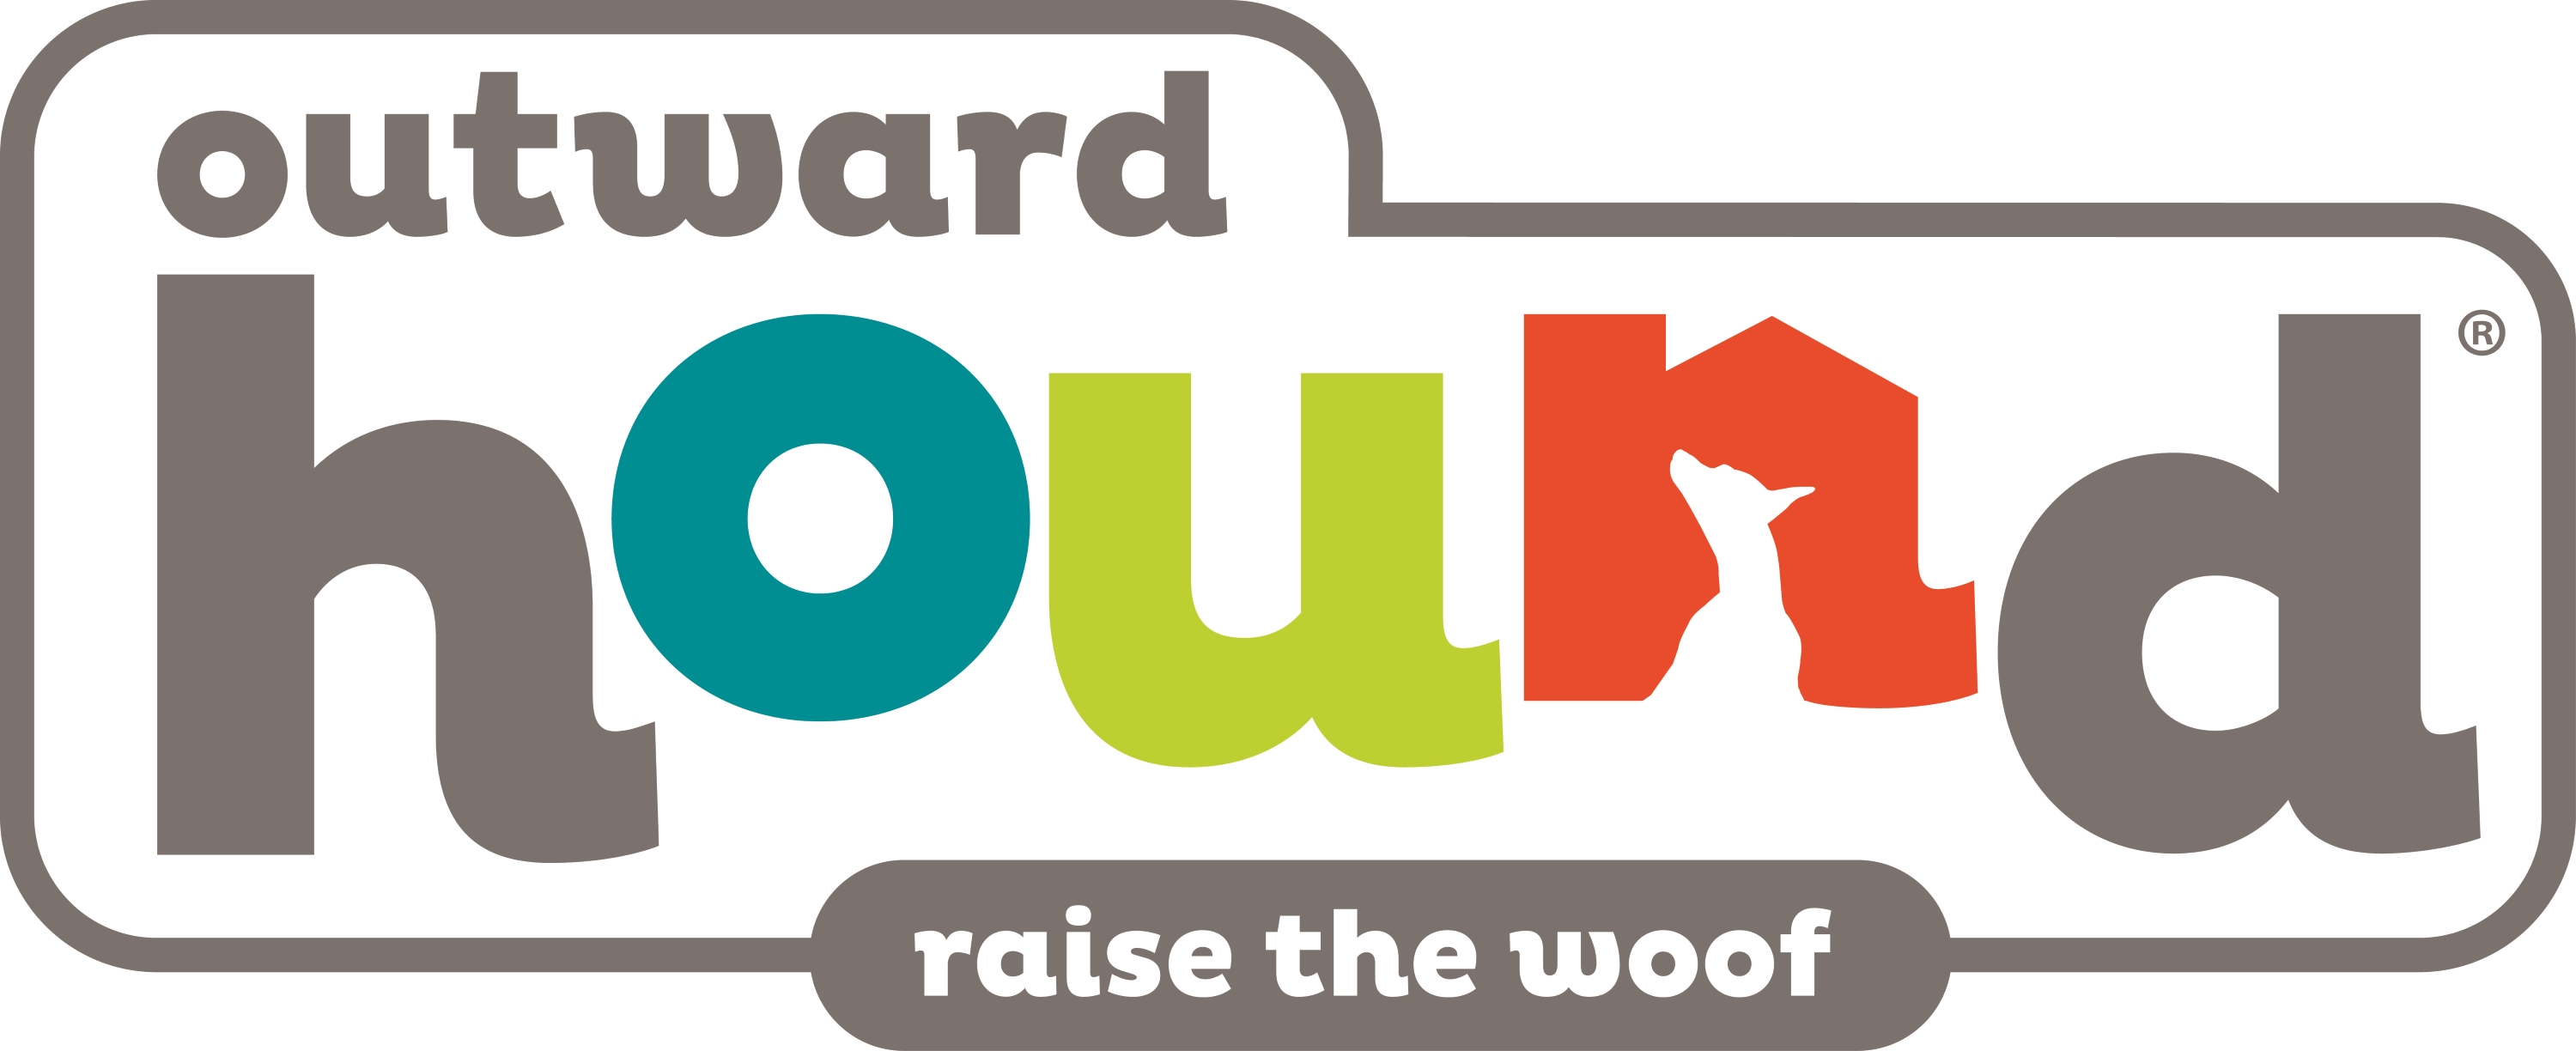 Outward Hound logo